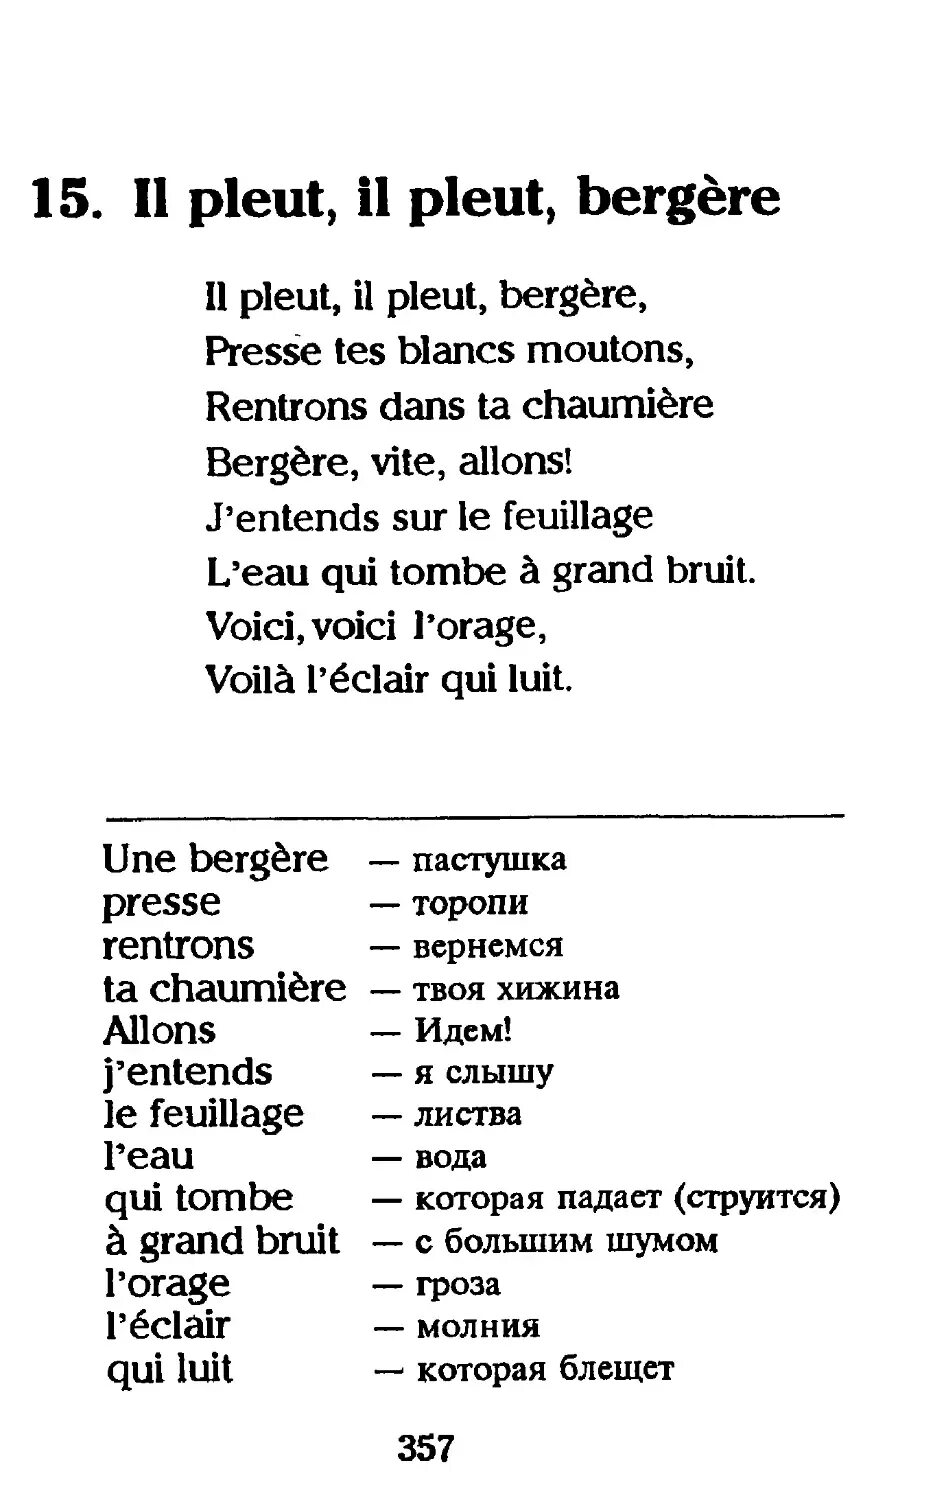 Французский стих на русском